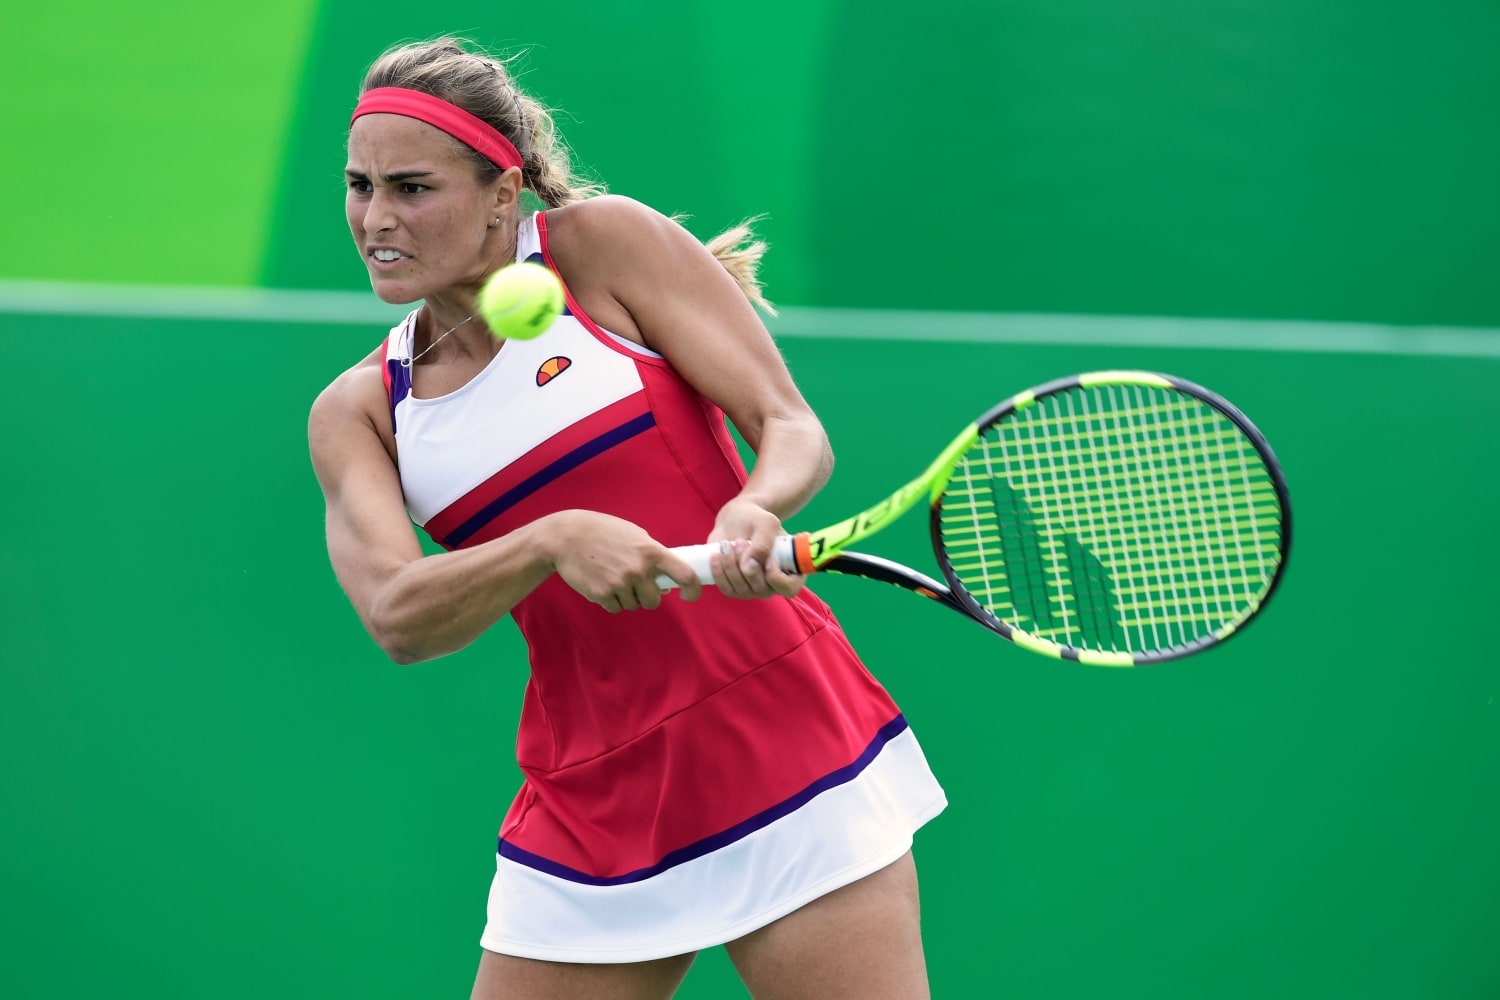 surfen middernacht kralen Tennis Star Mónica Puig Stunning Rivals, May Win Puerto Rico's First Gold